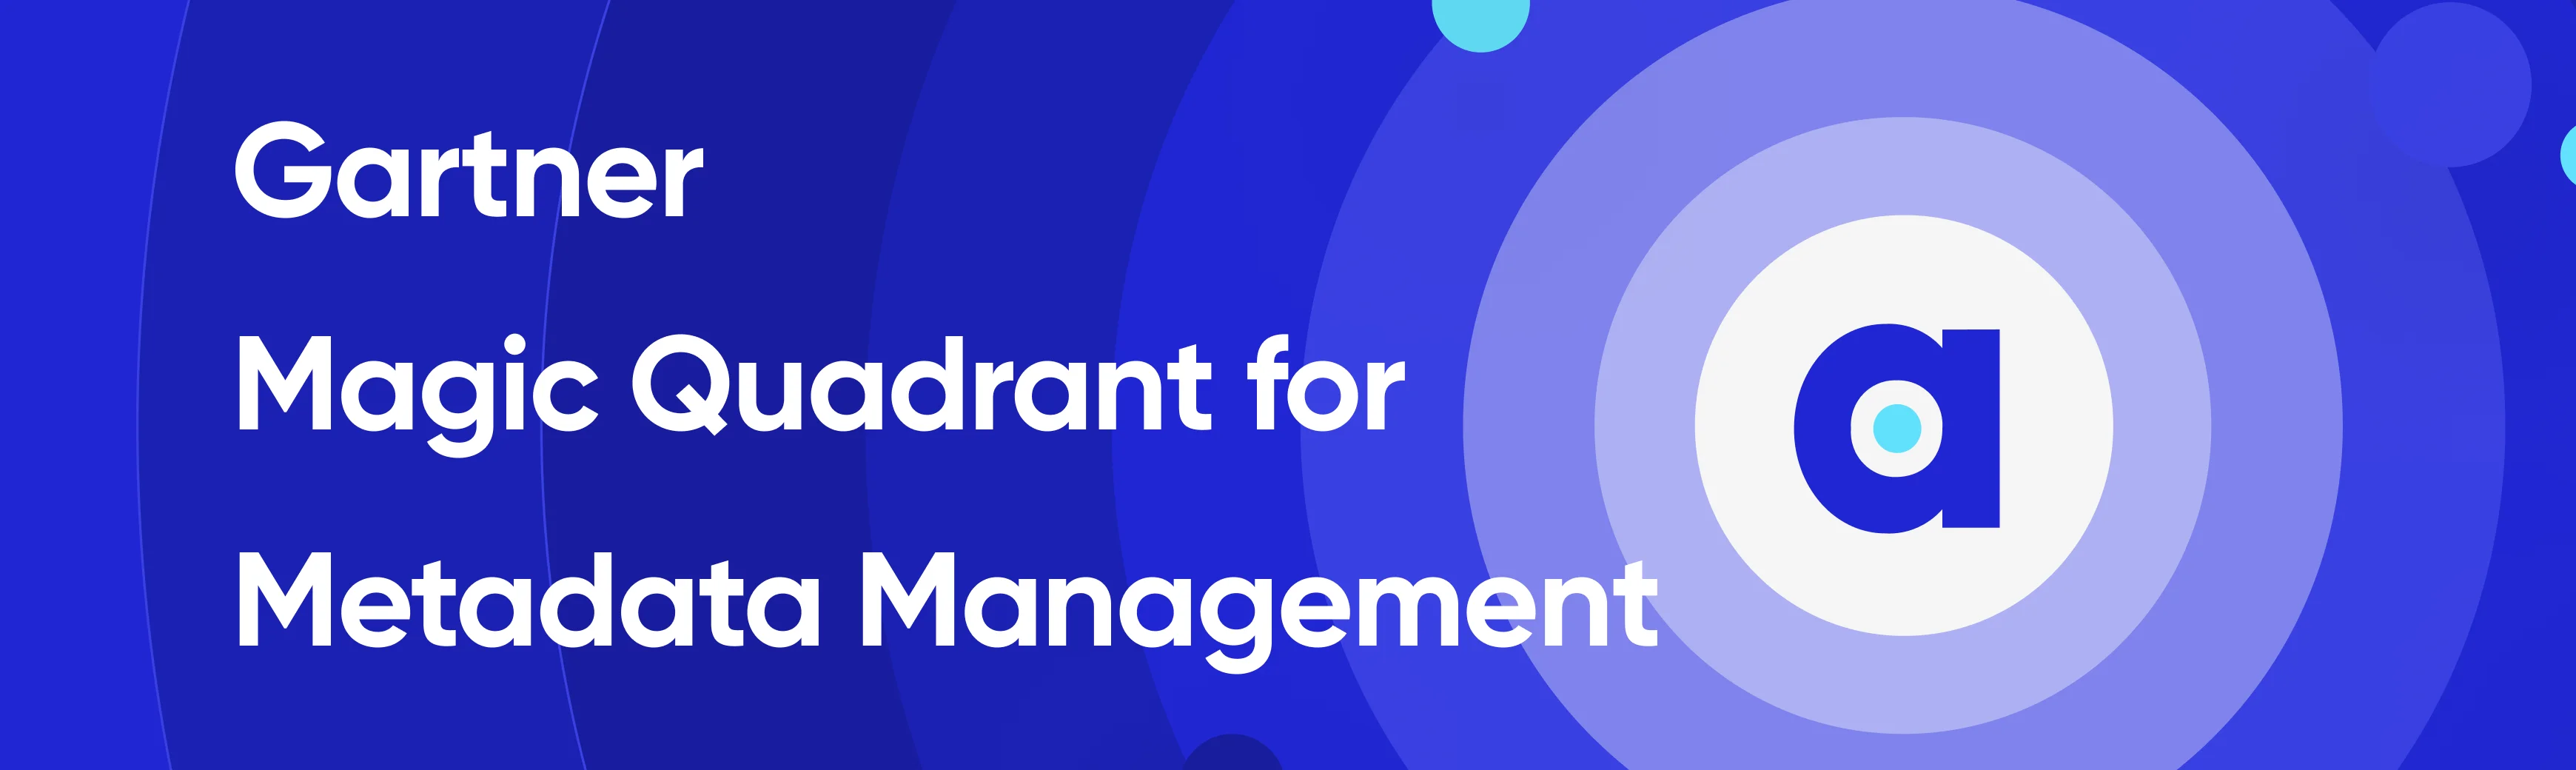 Gartner Magic Quadrant for Metadata Management to Active Metadata.